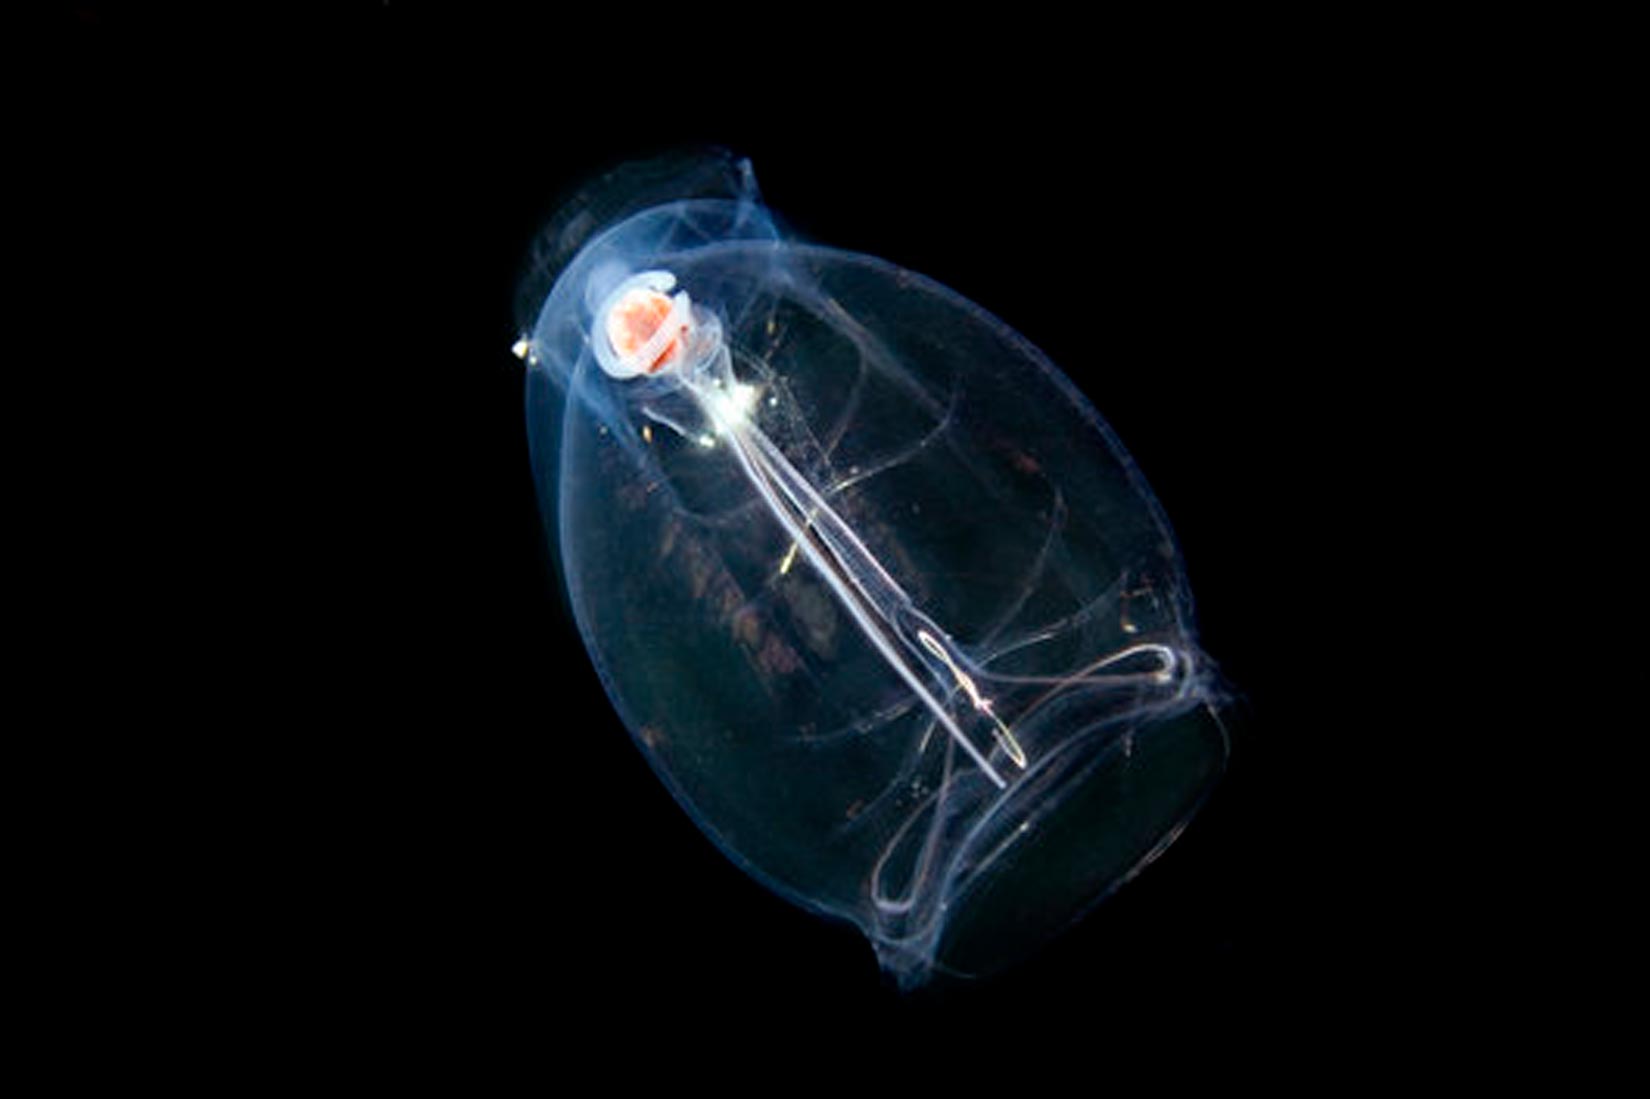 Fotografija prikazuje potpuno prozirni morski organizam u tamnom ambijentu. U svom središtu ima sjajnu nit, te svojim oblikom cijeli organizam podsjeća na žarulju.